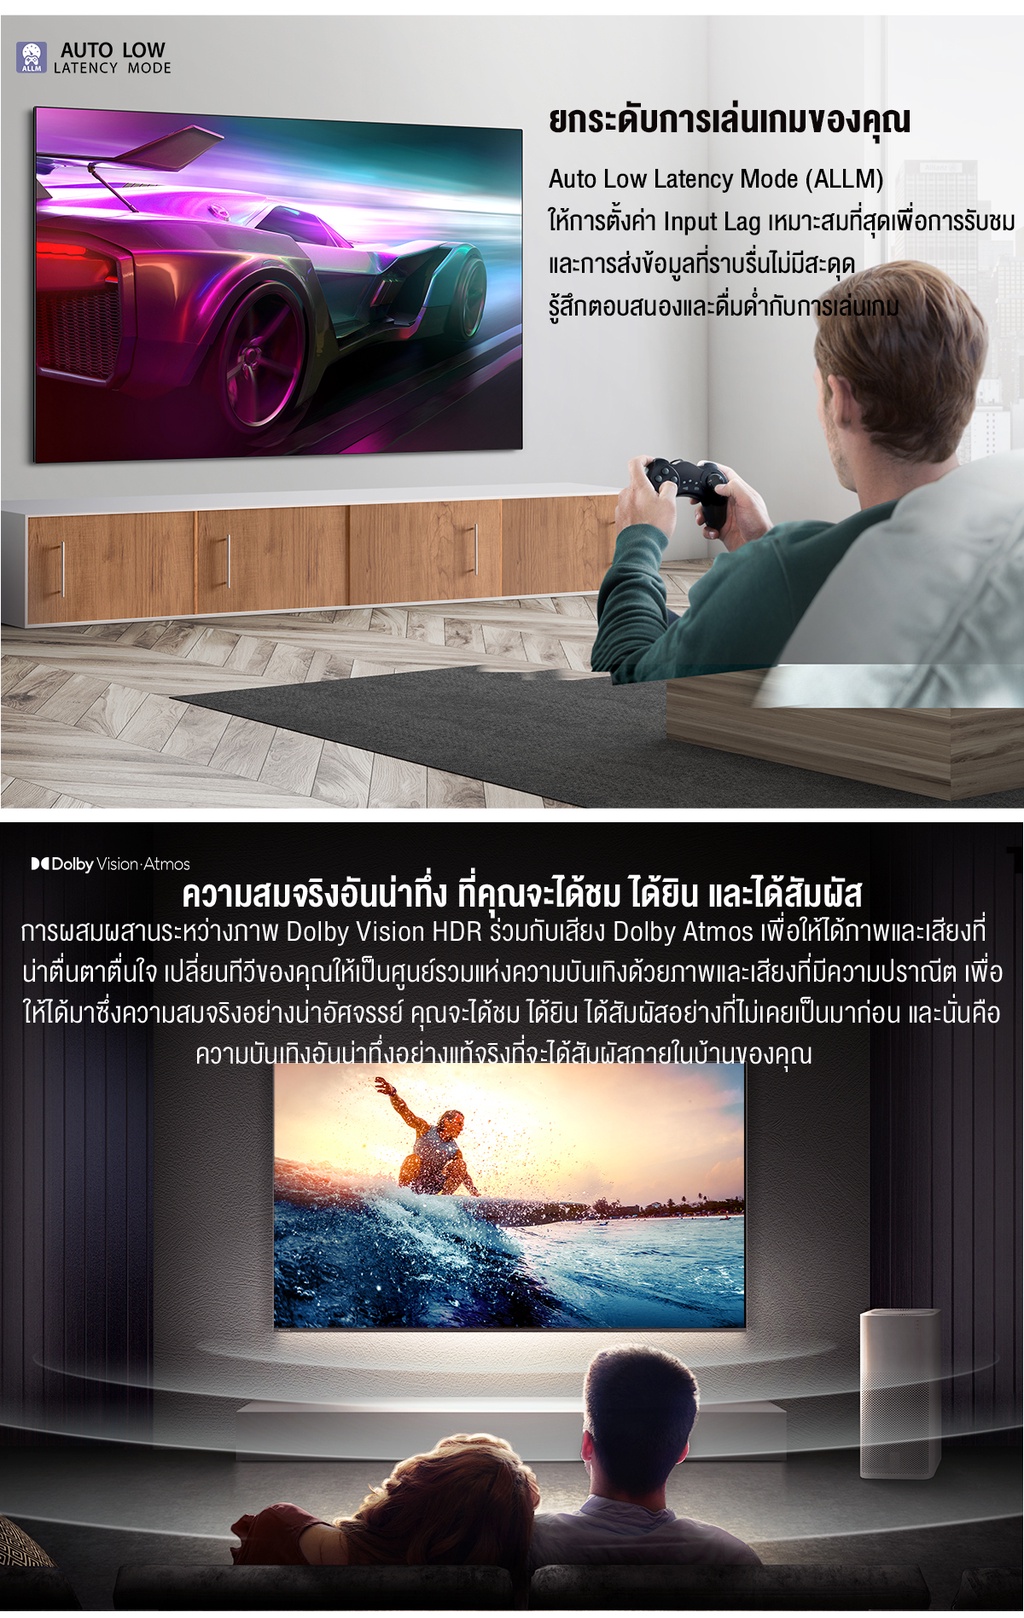 รูปภาพเพิ่มเติมของ Toshiba TV 55M550MP ทีวี 55 นิ้ว 4K Ultra HD Quantum Dot Google TV HDR10+ Smart tv